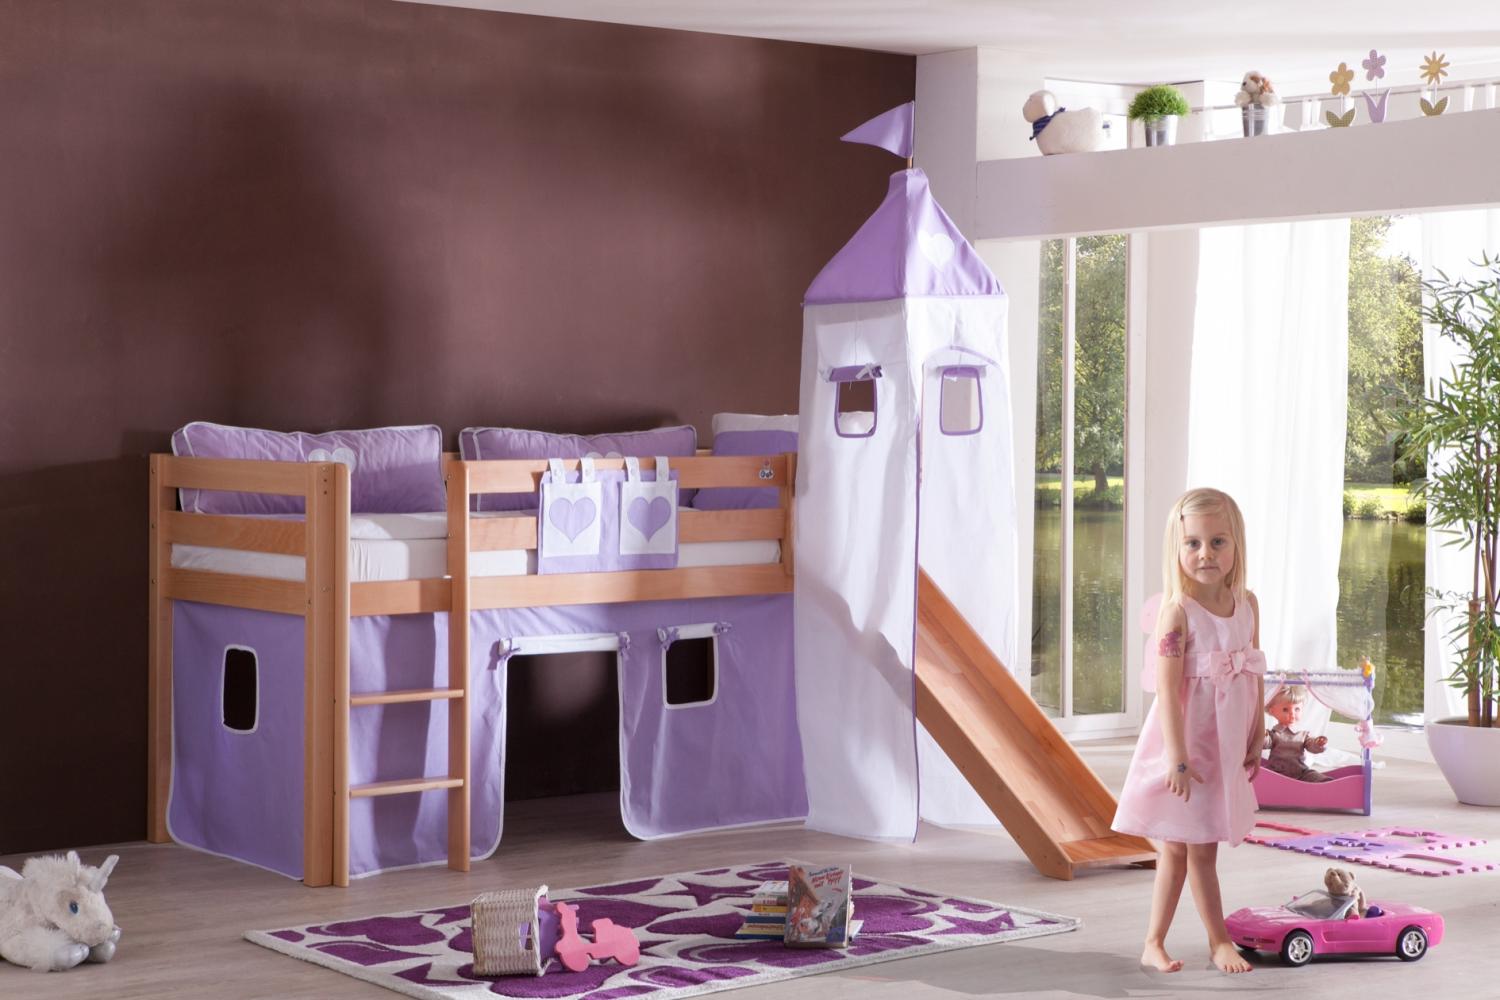 Halbhohes Spielbett ALEX mit Rutsche/Turm Buche massiv natur lackiert mit Stoffset purple/weiß Bild 1